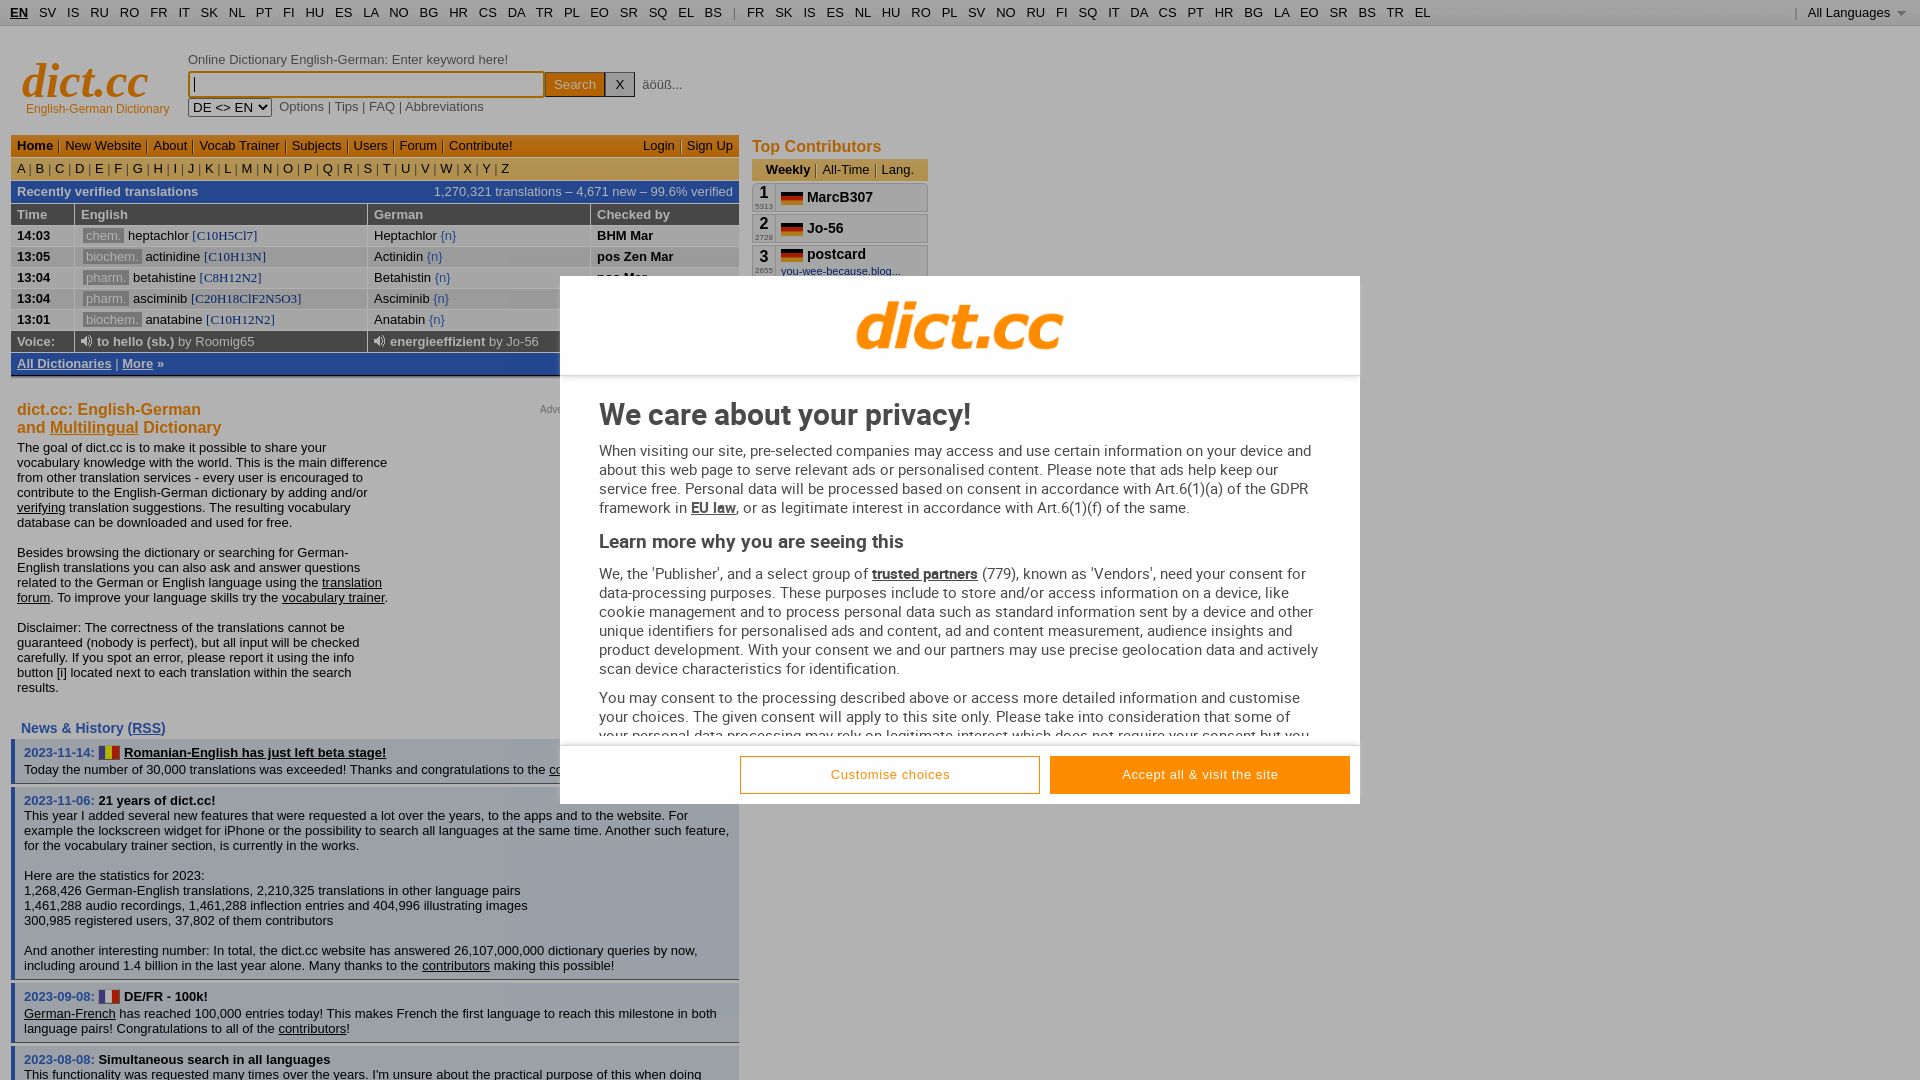 État du site web dict.cc est   EN LIGNE